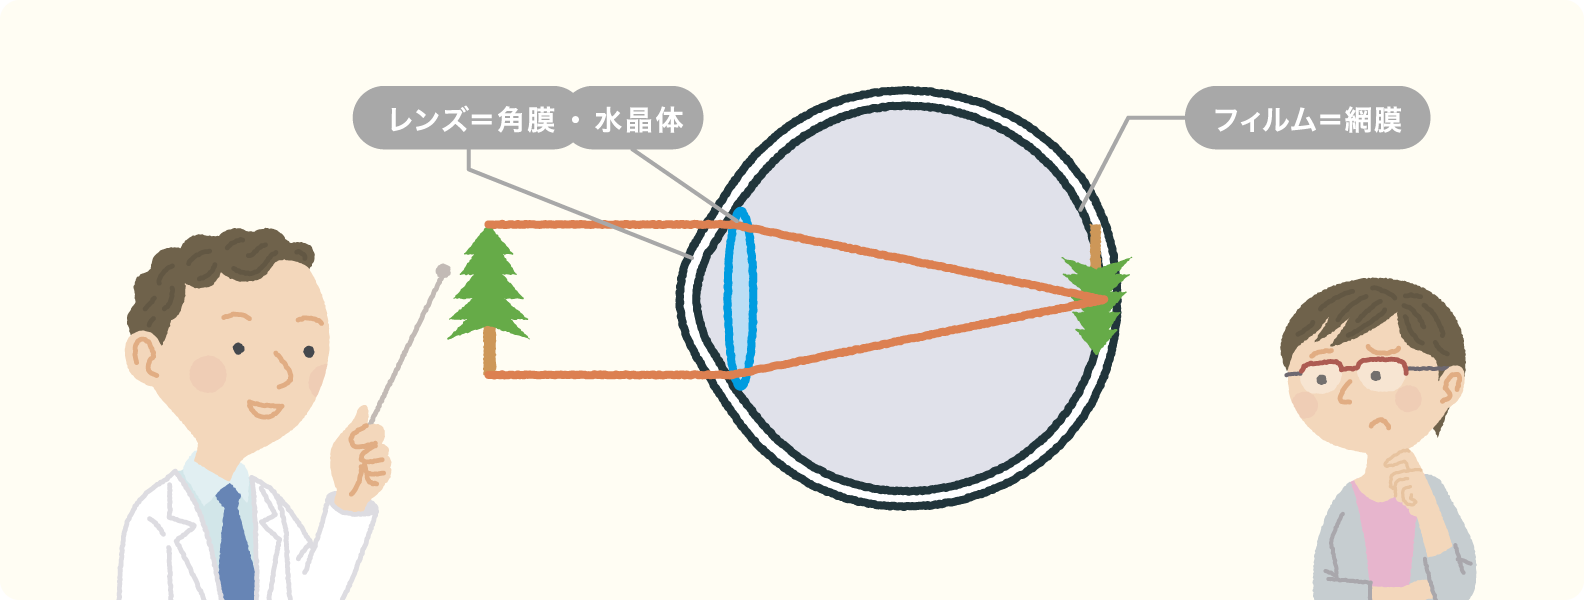 目の仕組みの図